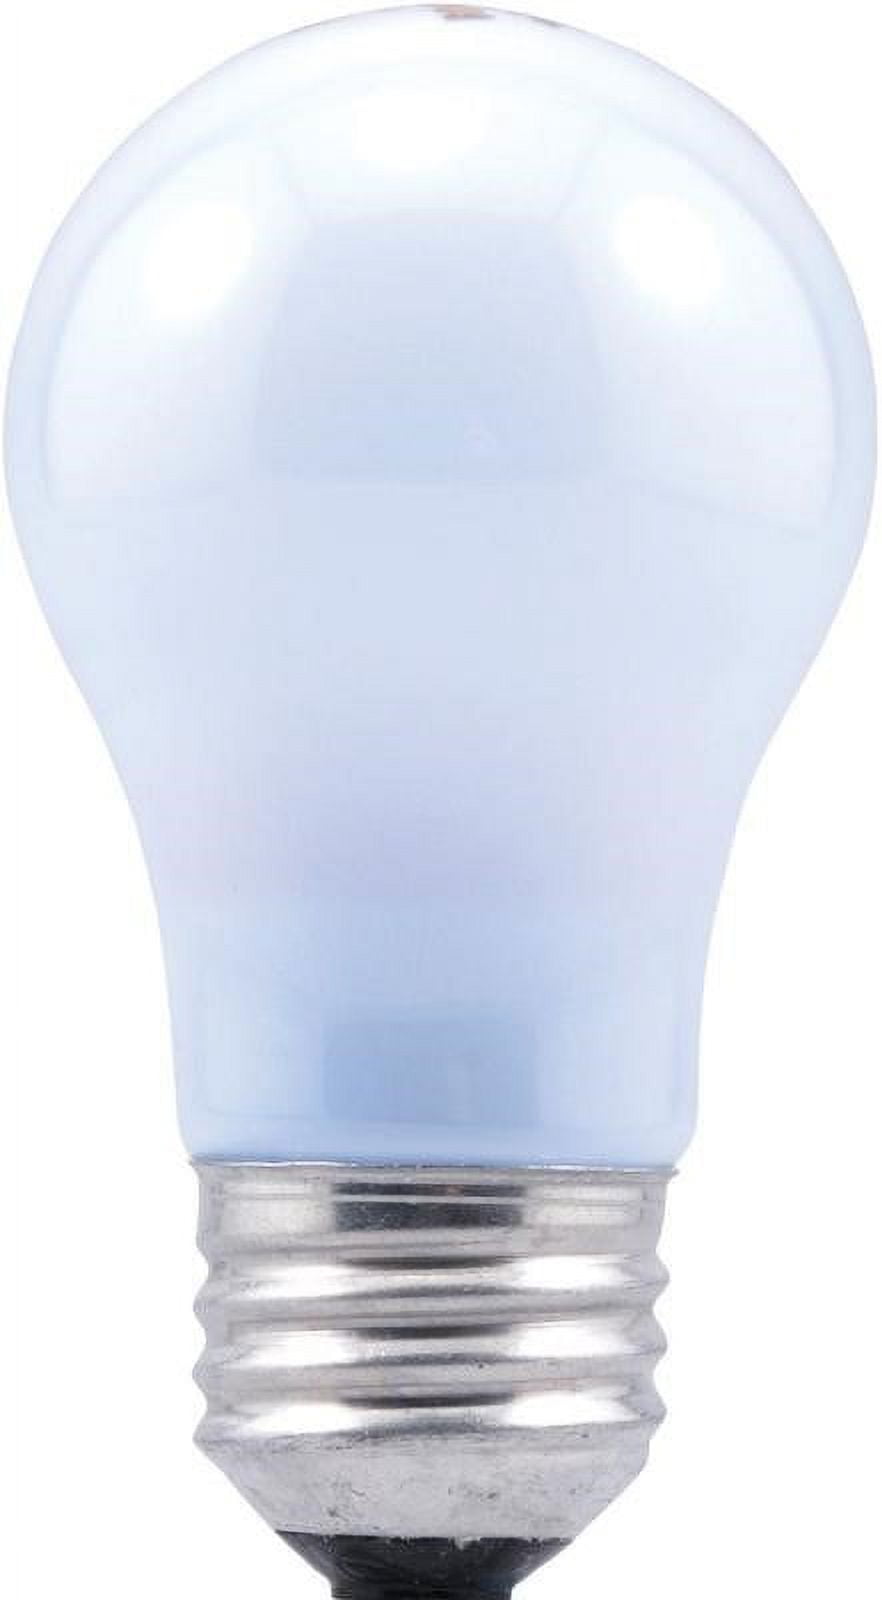 Refrigerator Light Bulb 40 Watt 120V - DAC Engineering & Construction Inc.